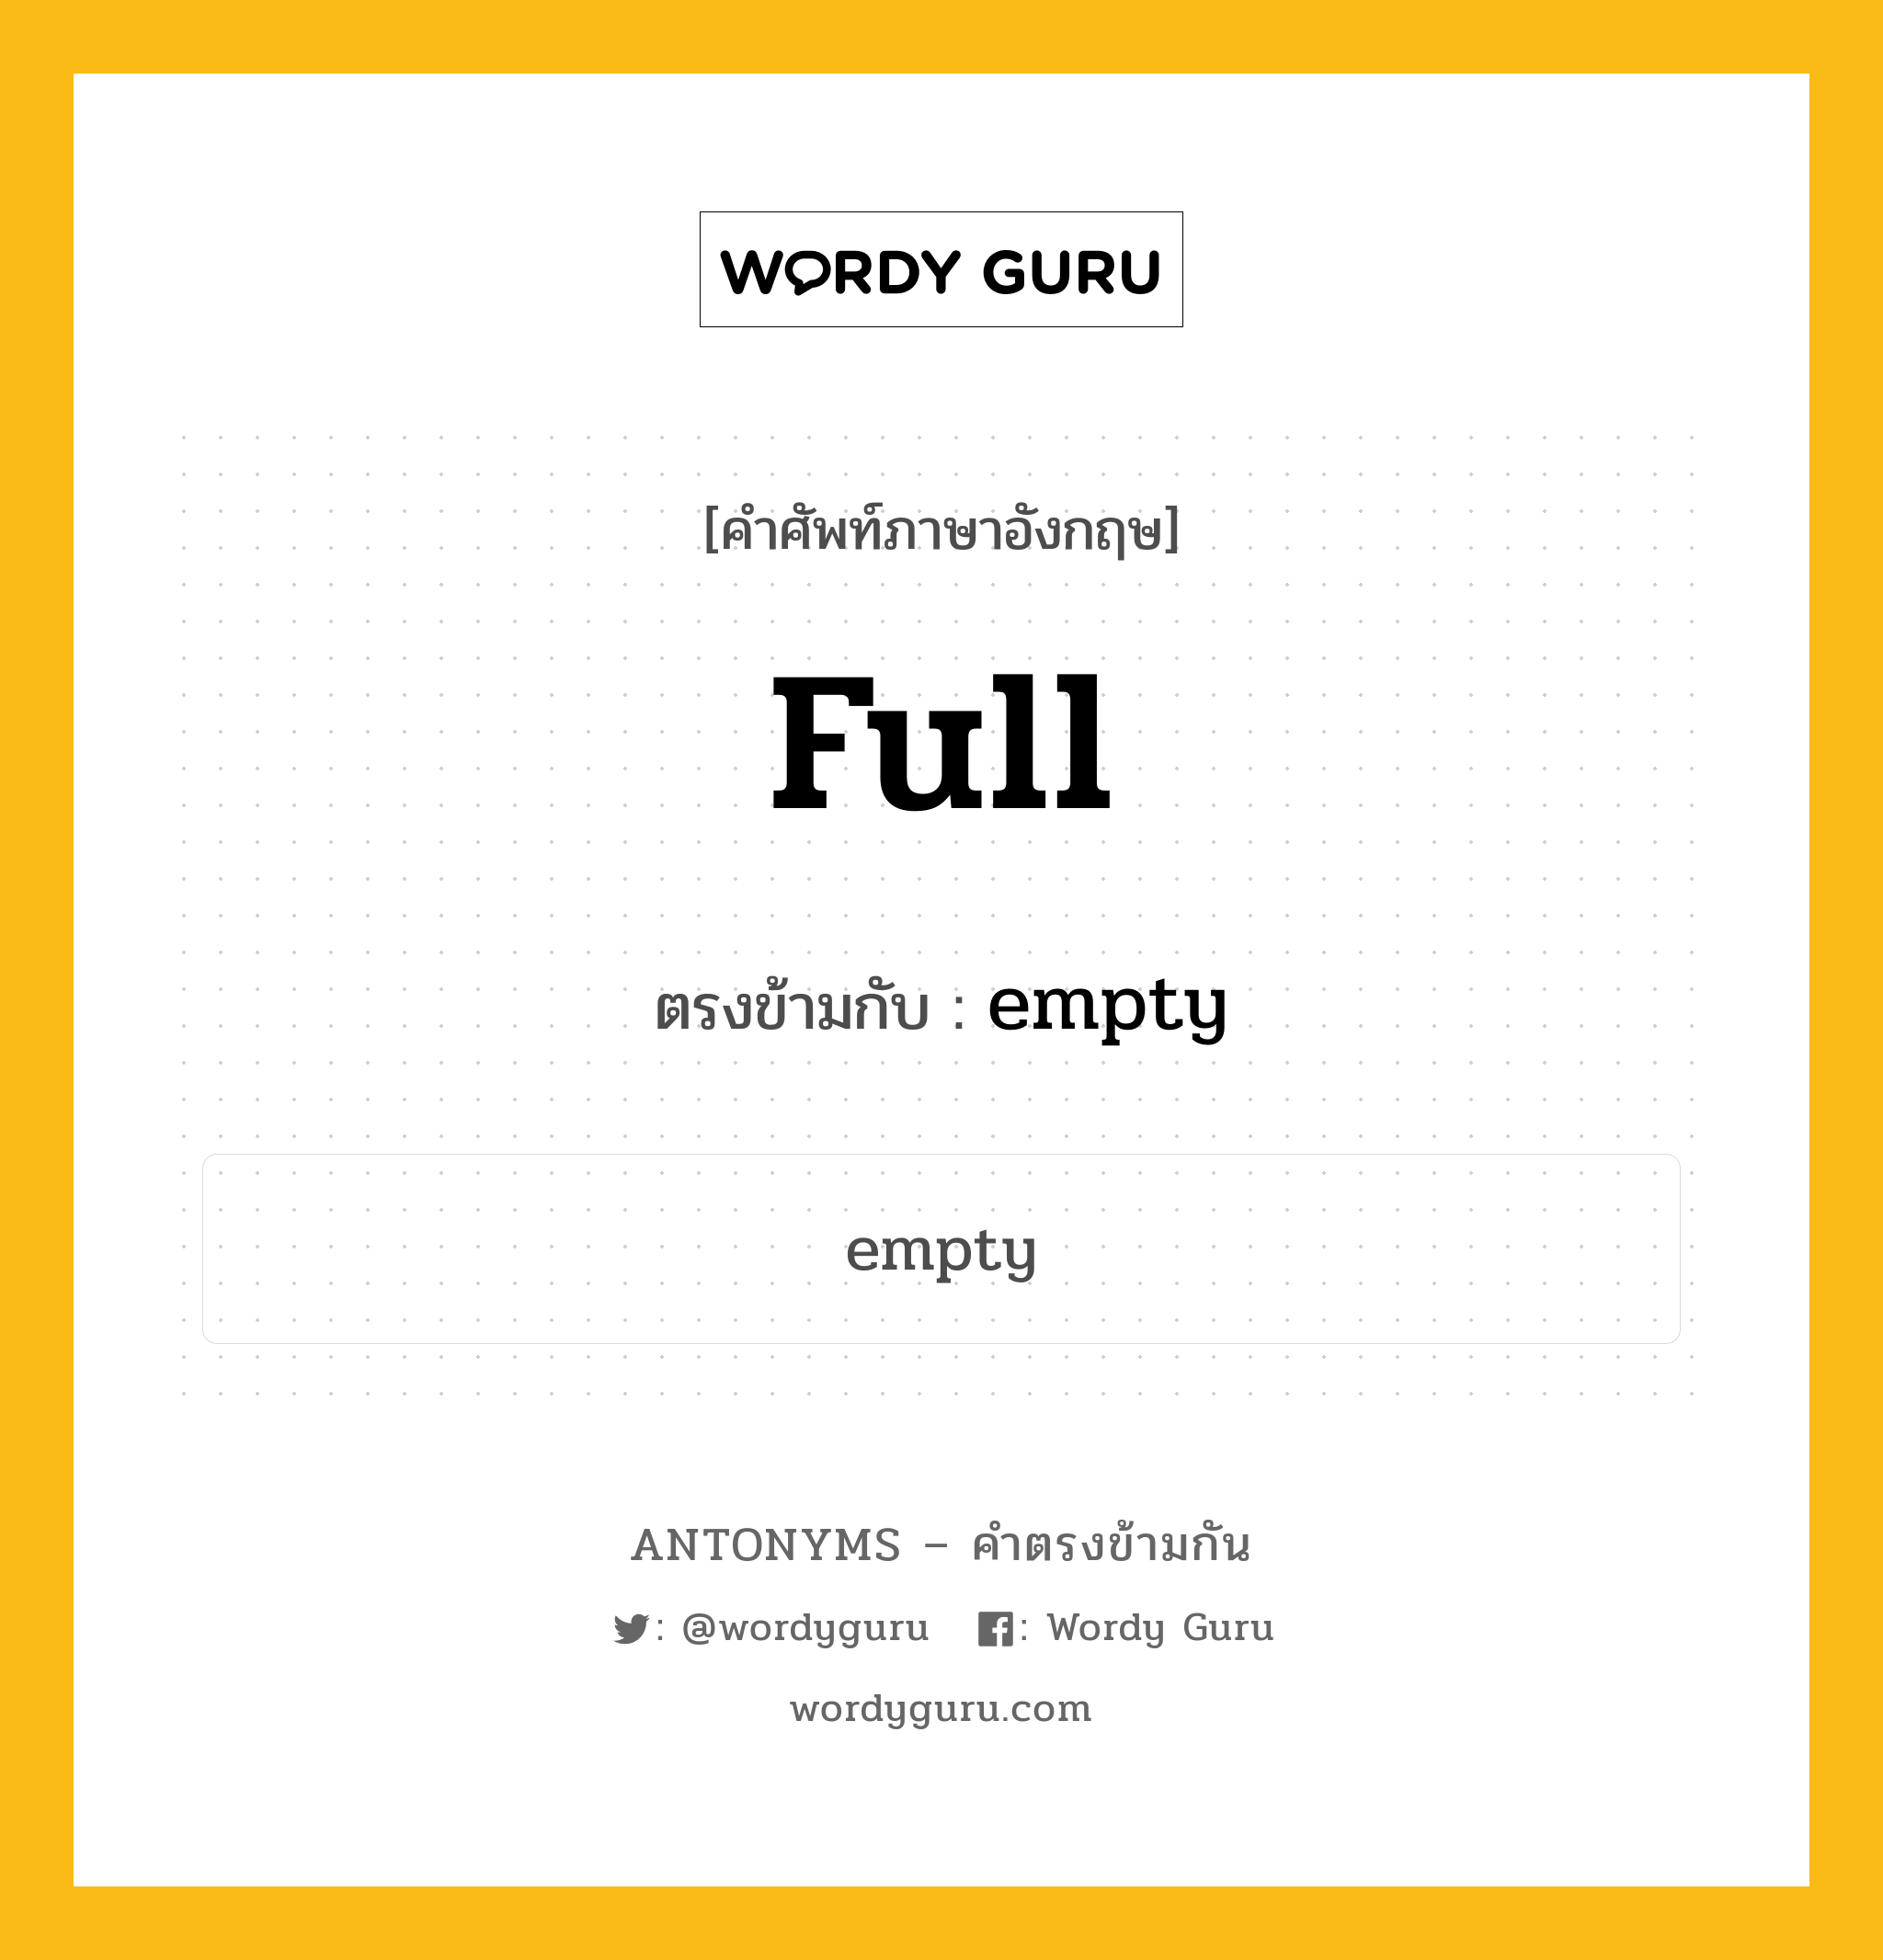 full เป็นคำตรงข้ามกับคำไหนบ้าง?, คำศัพท์ภาษาอังกฤษ full ตรงข้ามกับ empty หมวด empty